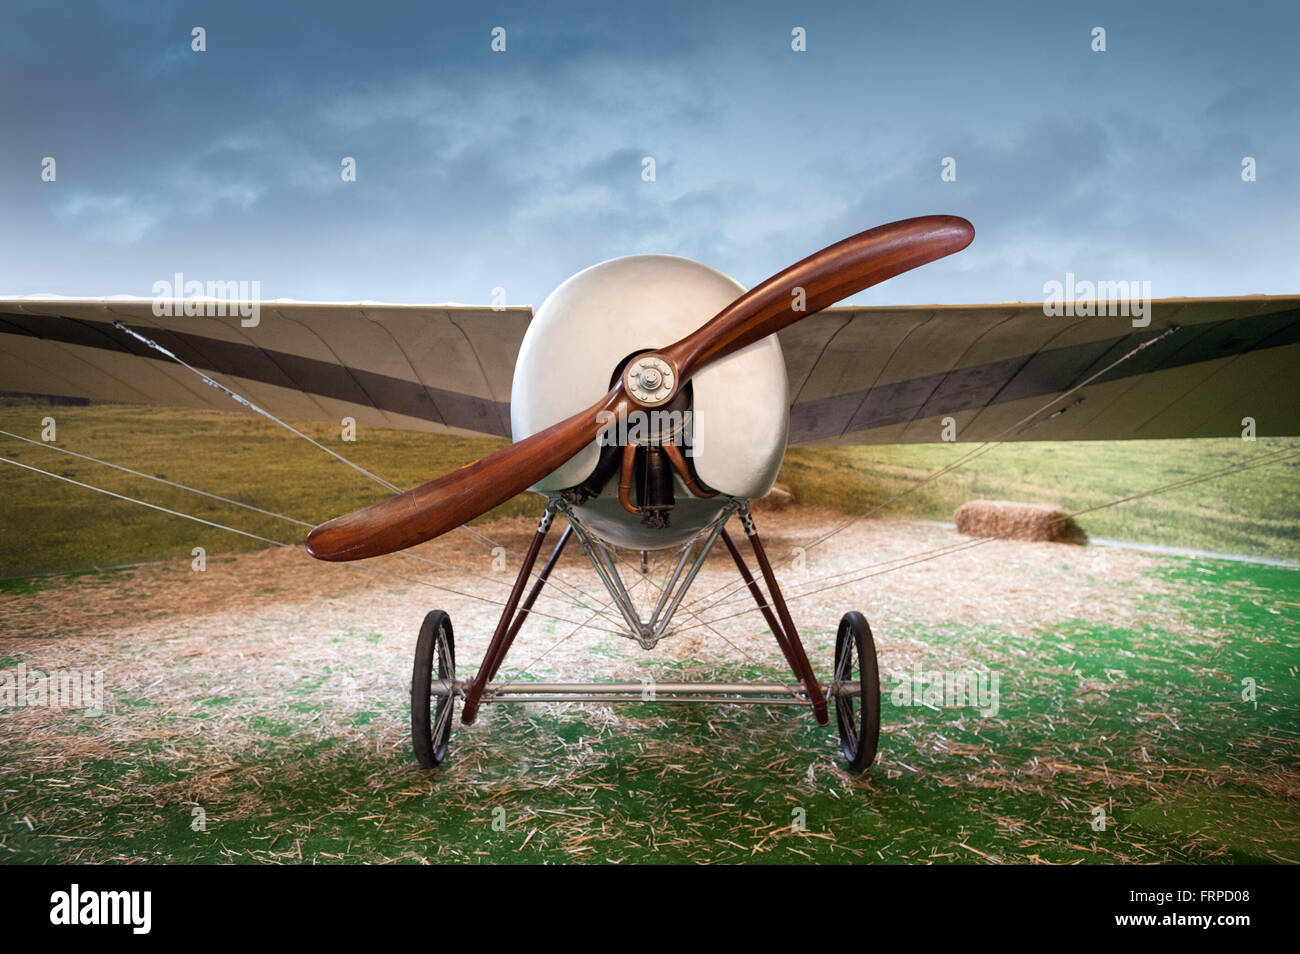 Vecchio vintage monoplan aereo con un propulsore di legno parcheggiato in un campo in un paesaggio, vista frontale Foto Stock